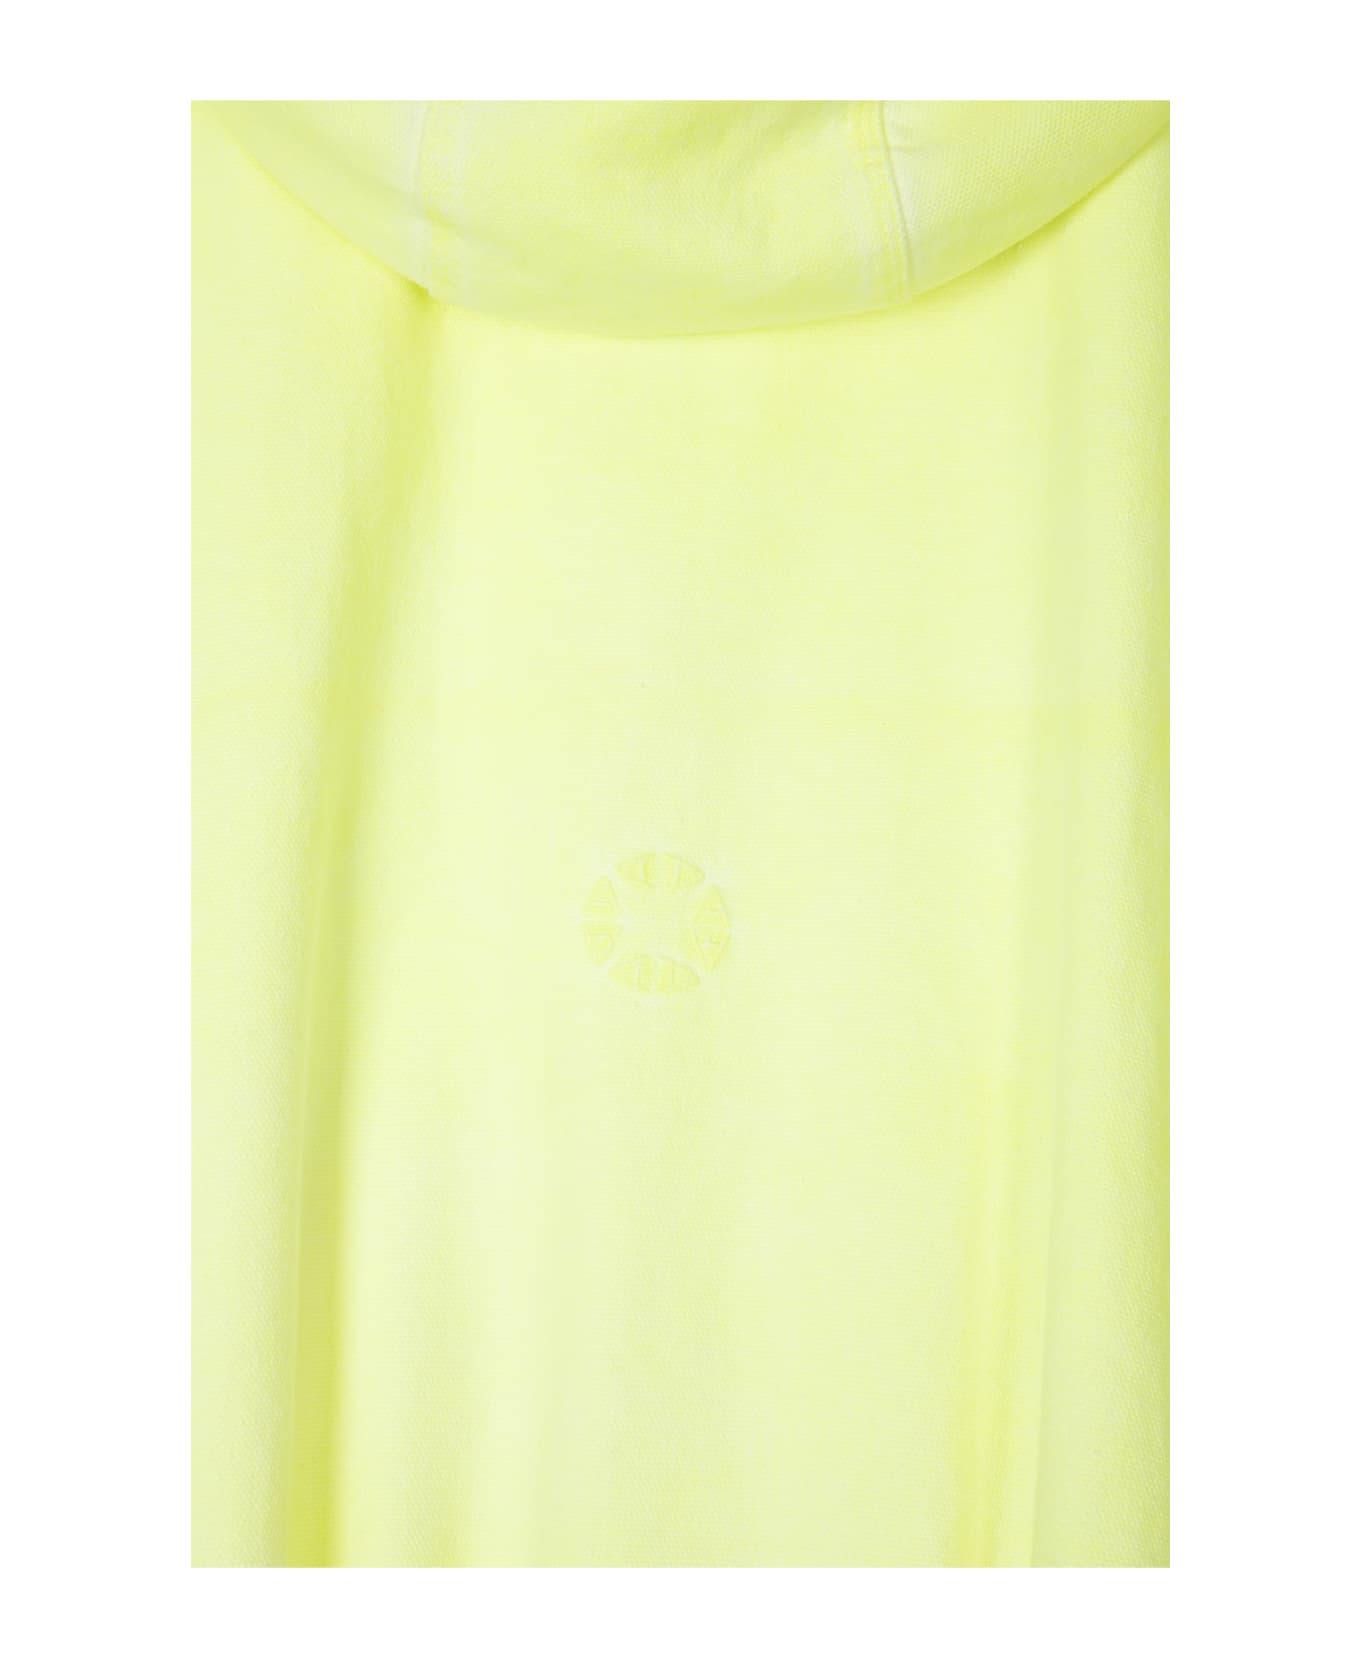 1017 ALYX 9SM Sleeveless Skate Jacket Neon Yellow Canvas Hooded Vest - Sleeveless Skate Jacket - Giallo